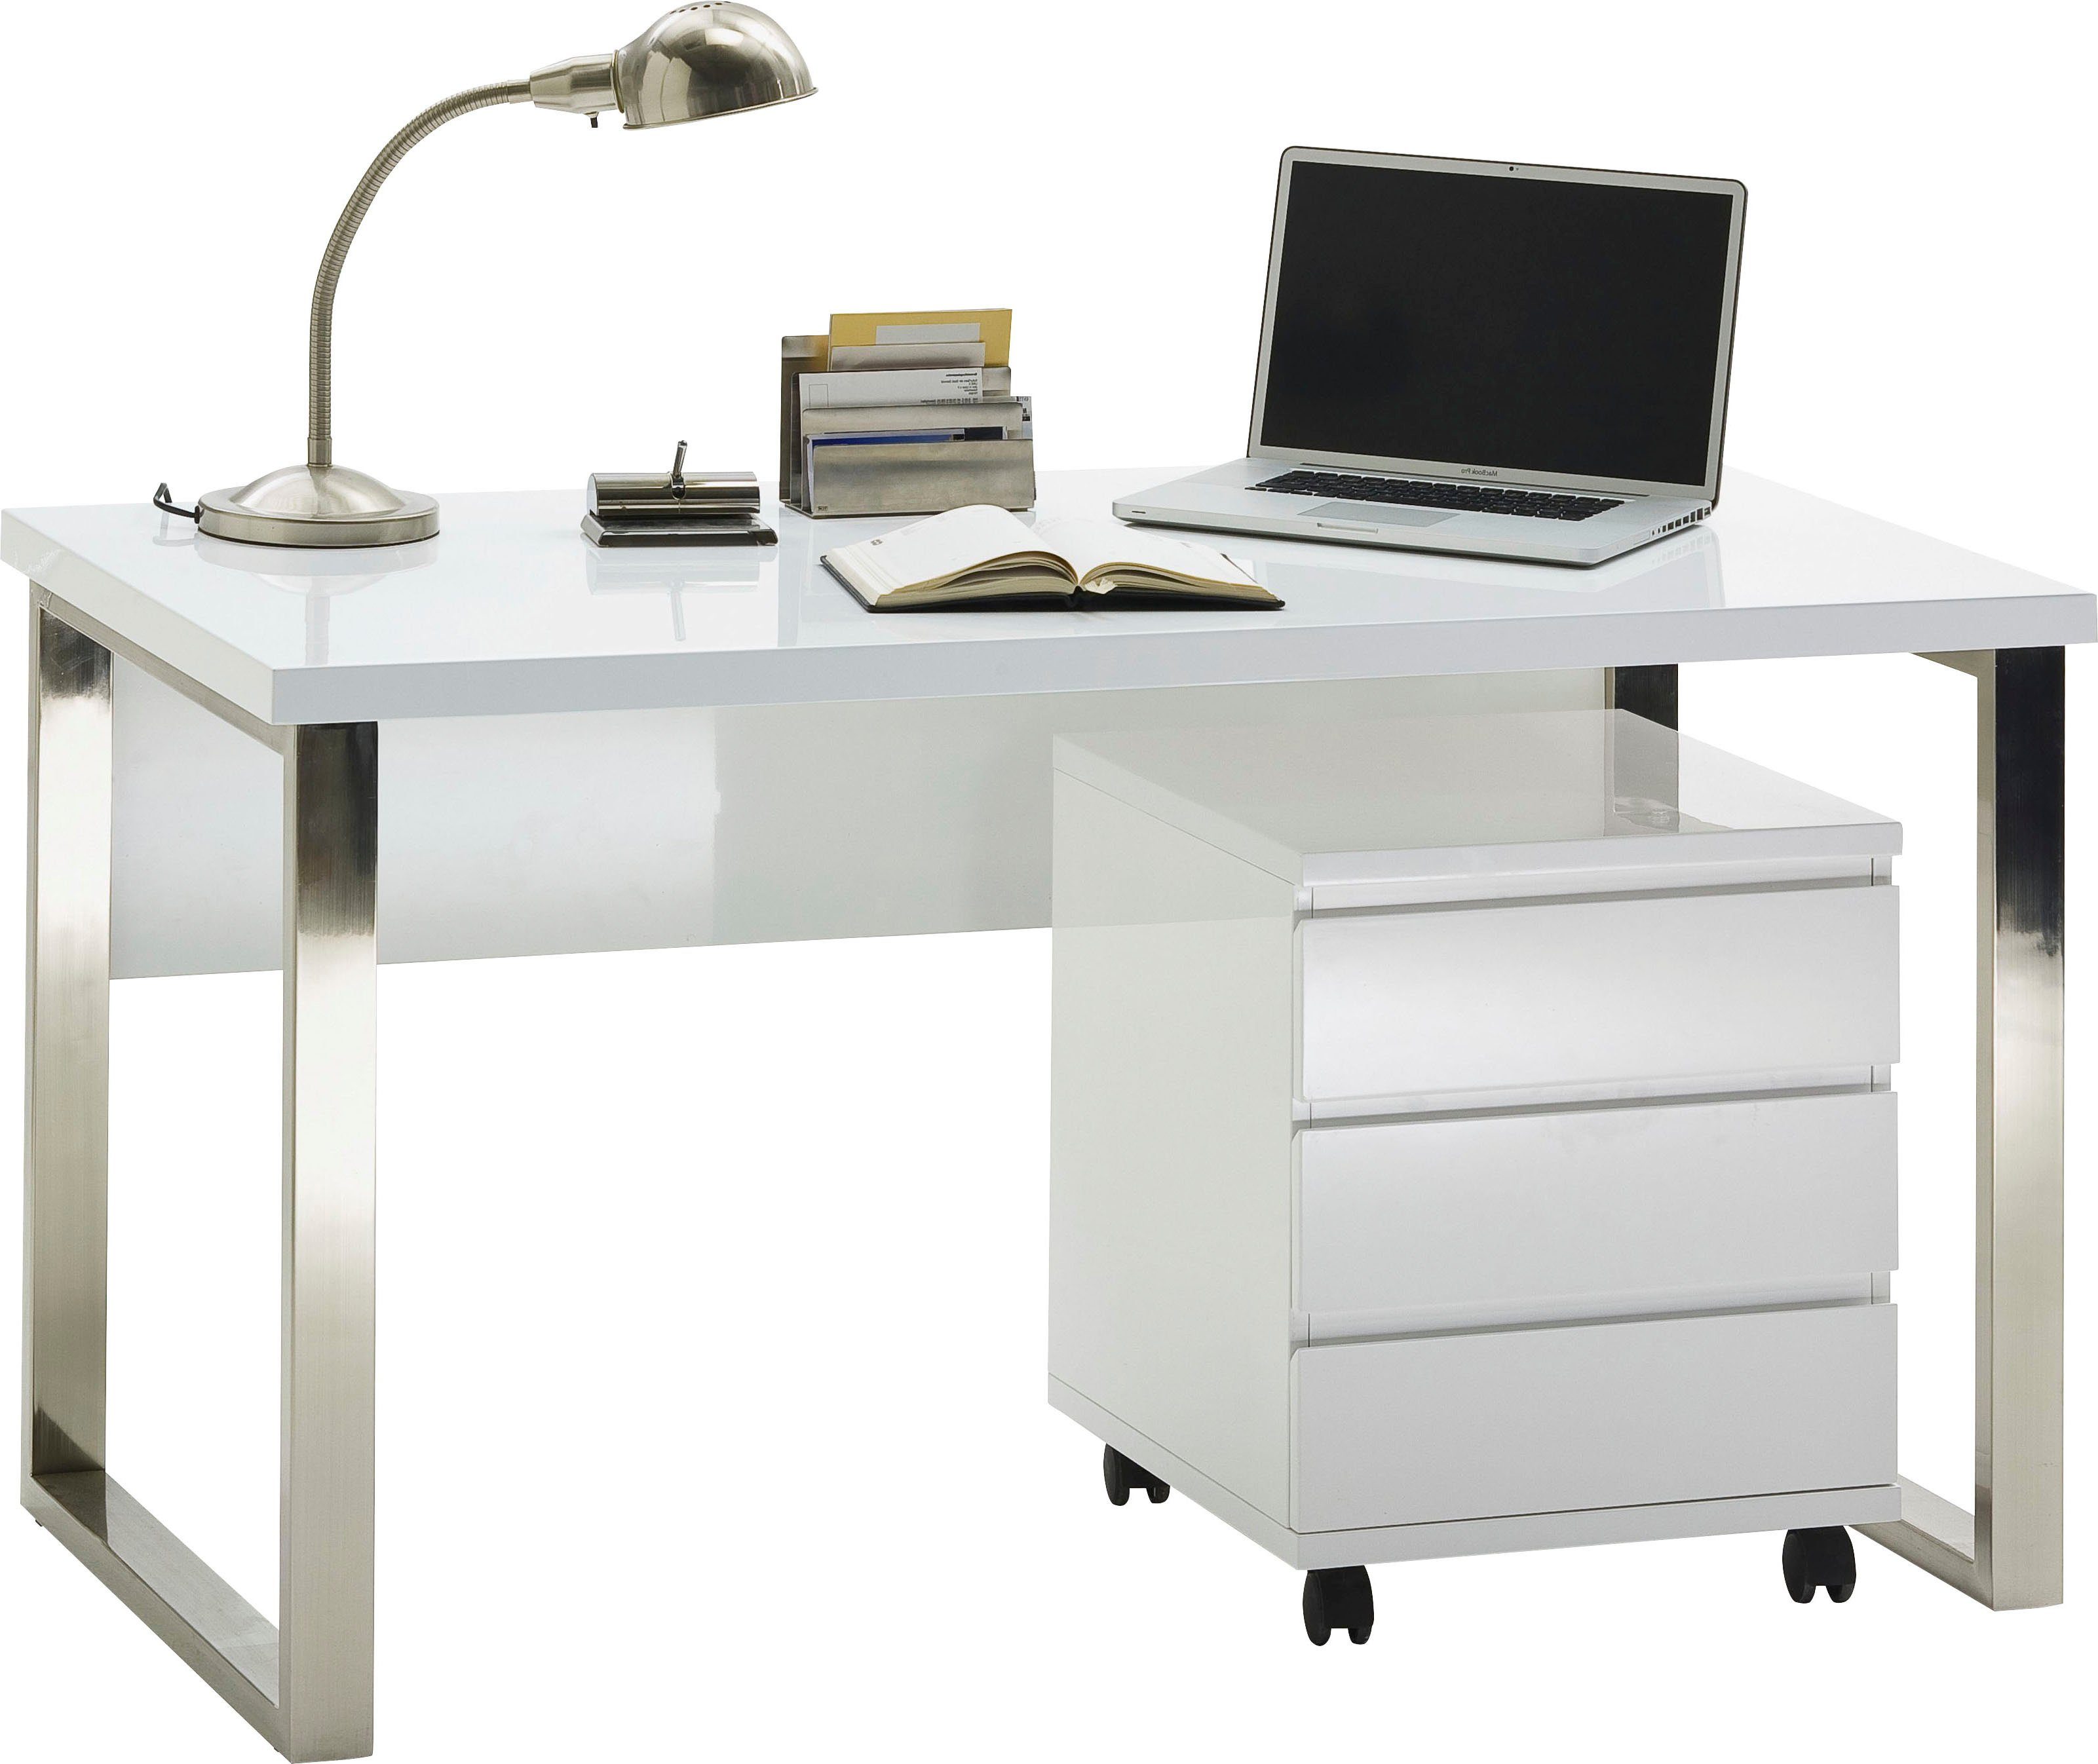 MCA furniture rollbar, Rollcontainer weiß RC, hochglanz Büroschrank